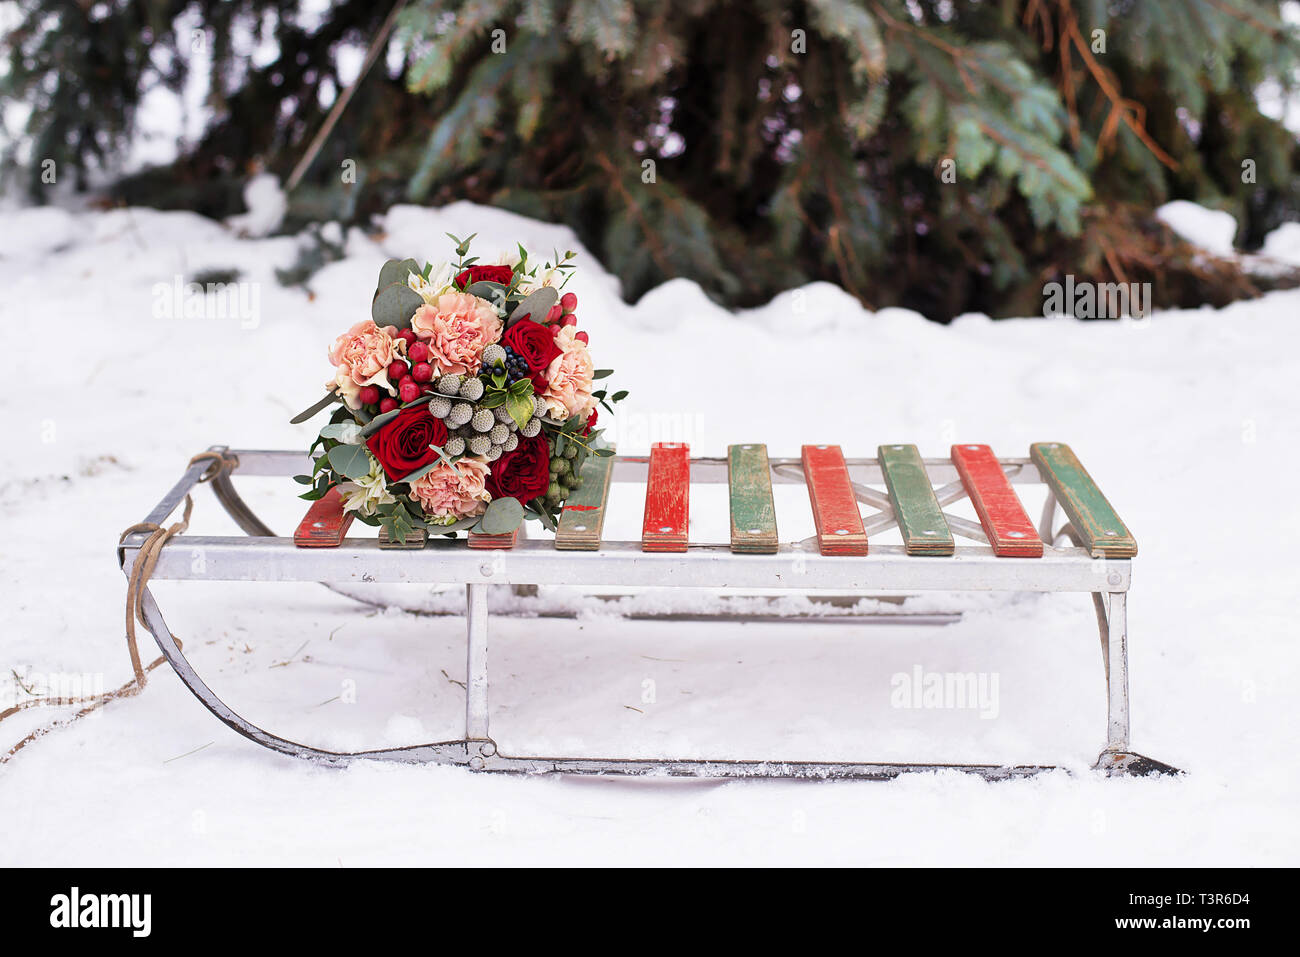 Schönen Brautstrauß liegt auf einem Schlitten für Winter auf weißen Schnee in einer verschneiten Park Stockfoto